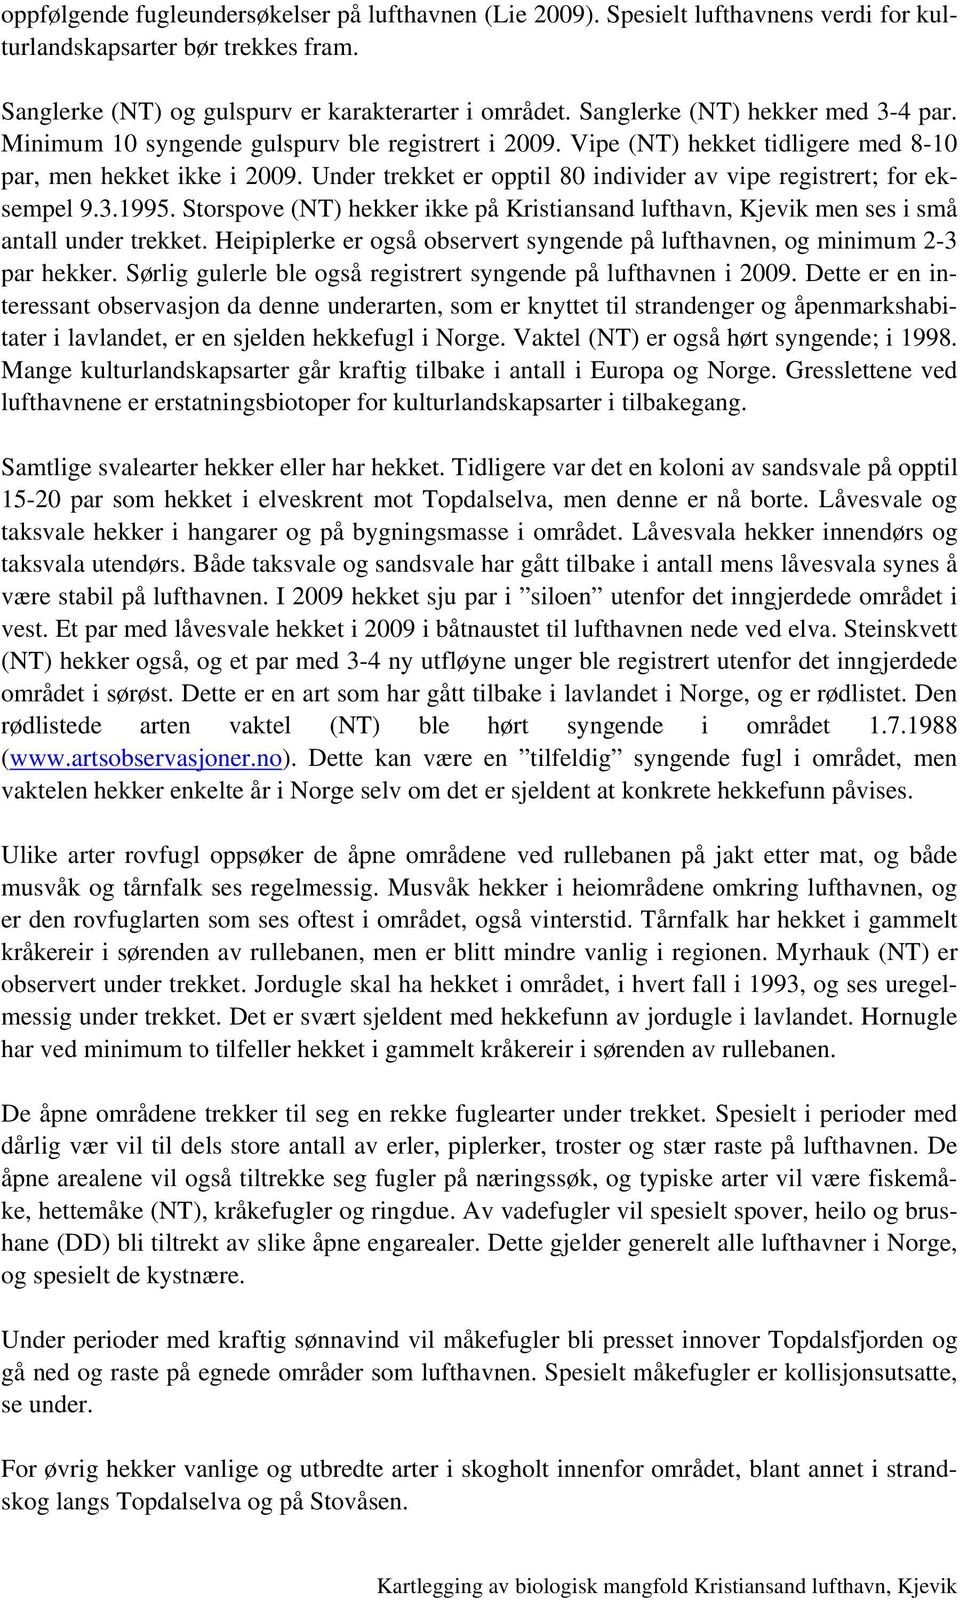 Under trekket er opptil 80 individer av vipe registrert; for eksempel 9.3.1995. Storspove (NT) hekker ikke på Kristiansand lufthavn, Kjevik men ses i små antall under trekket.